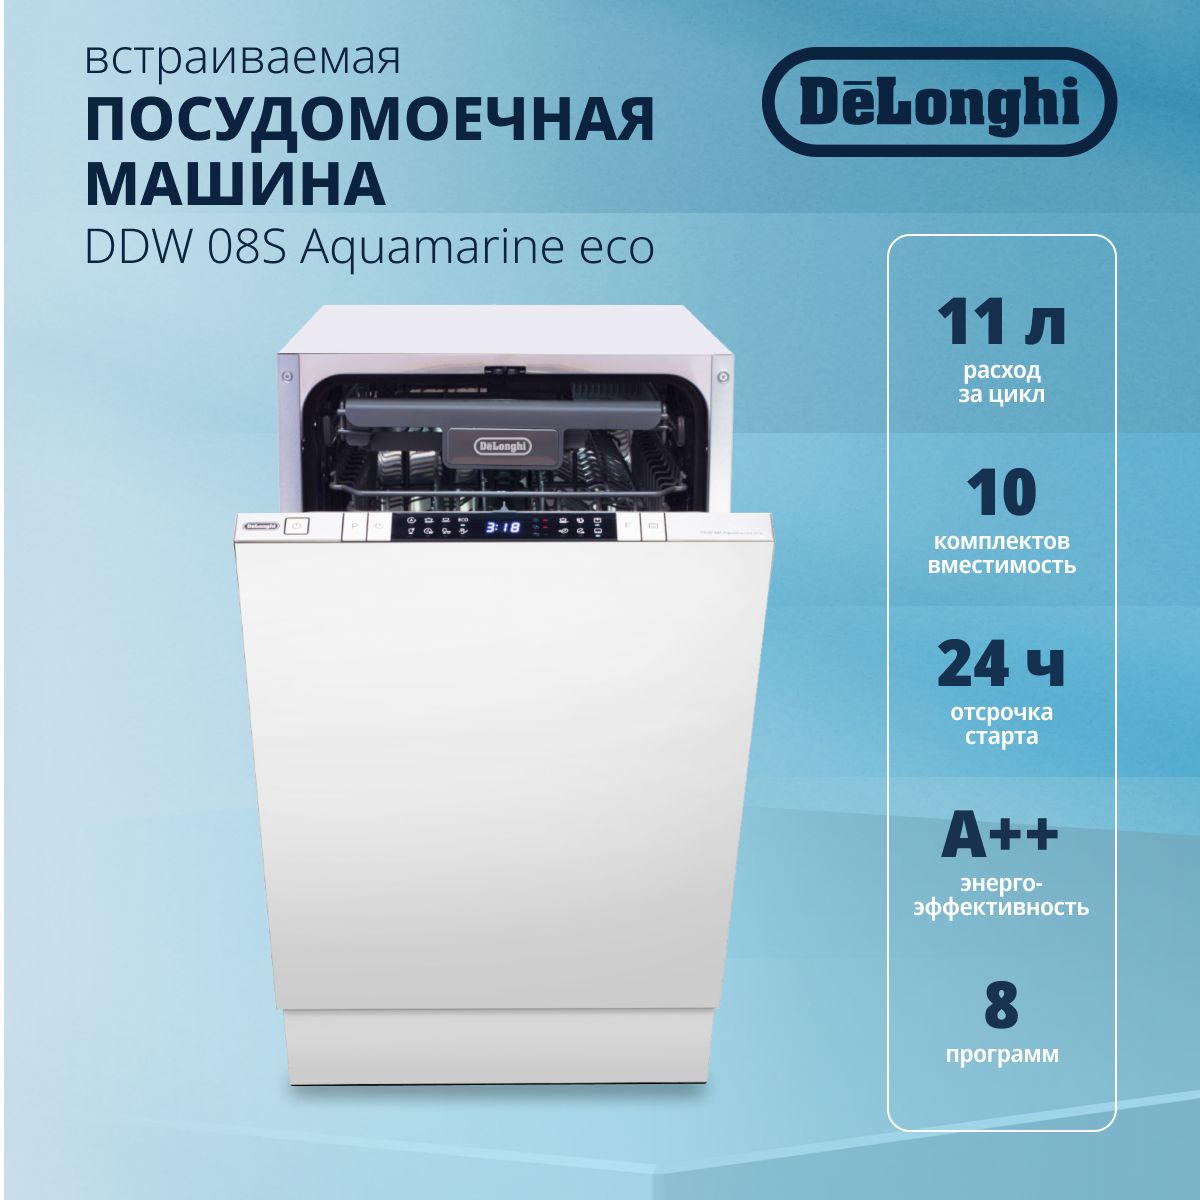 Встраиваемая Посудомоечная Машина DeLonghi DDW 08S Aquamarine Eco.